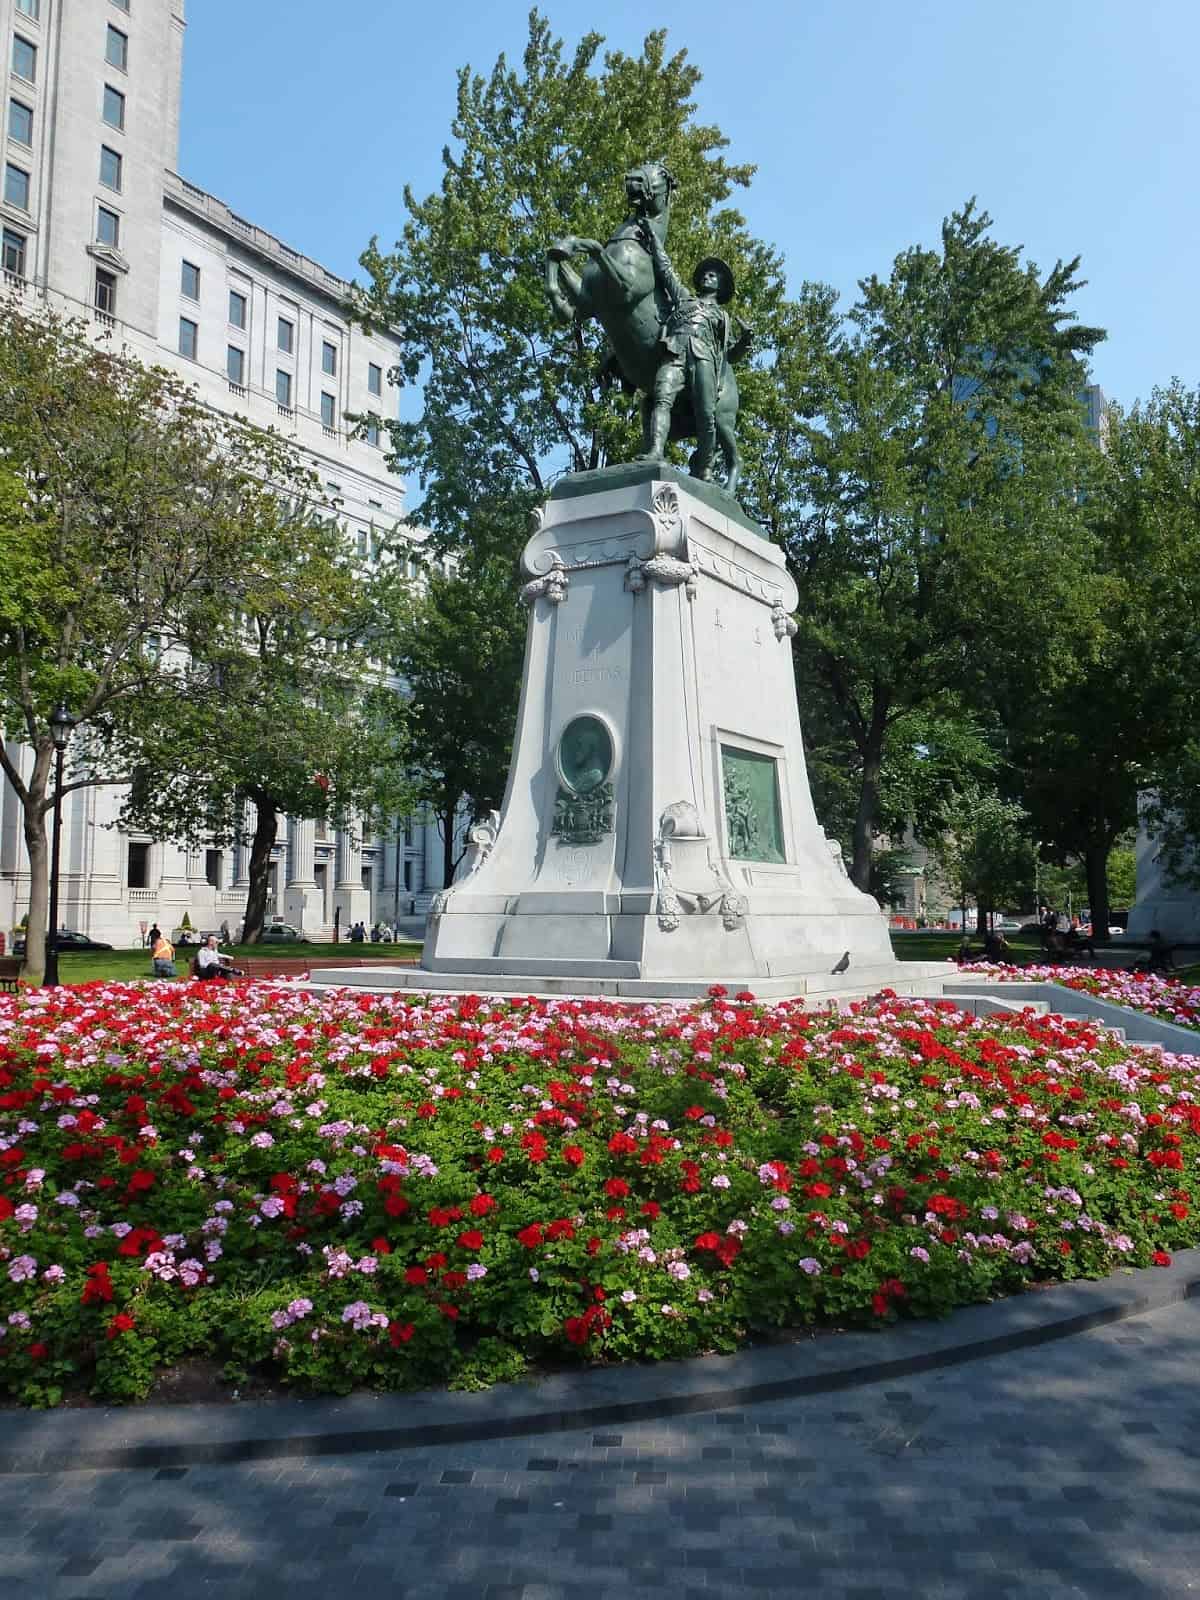 Square Dorchester in Montréal, Québec, Canada